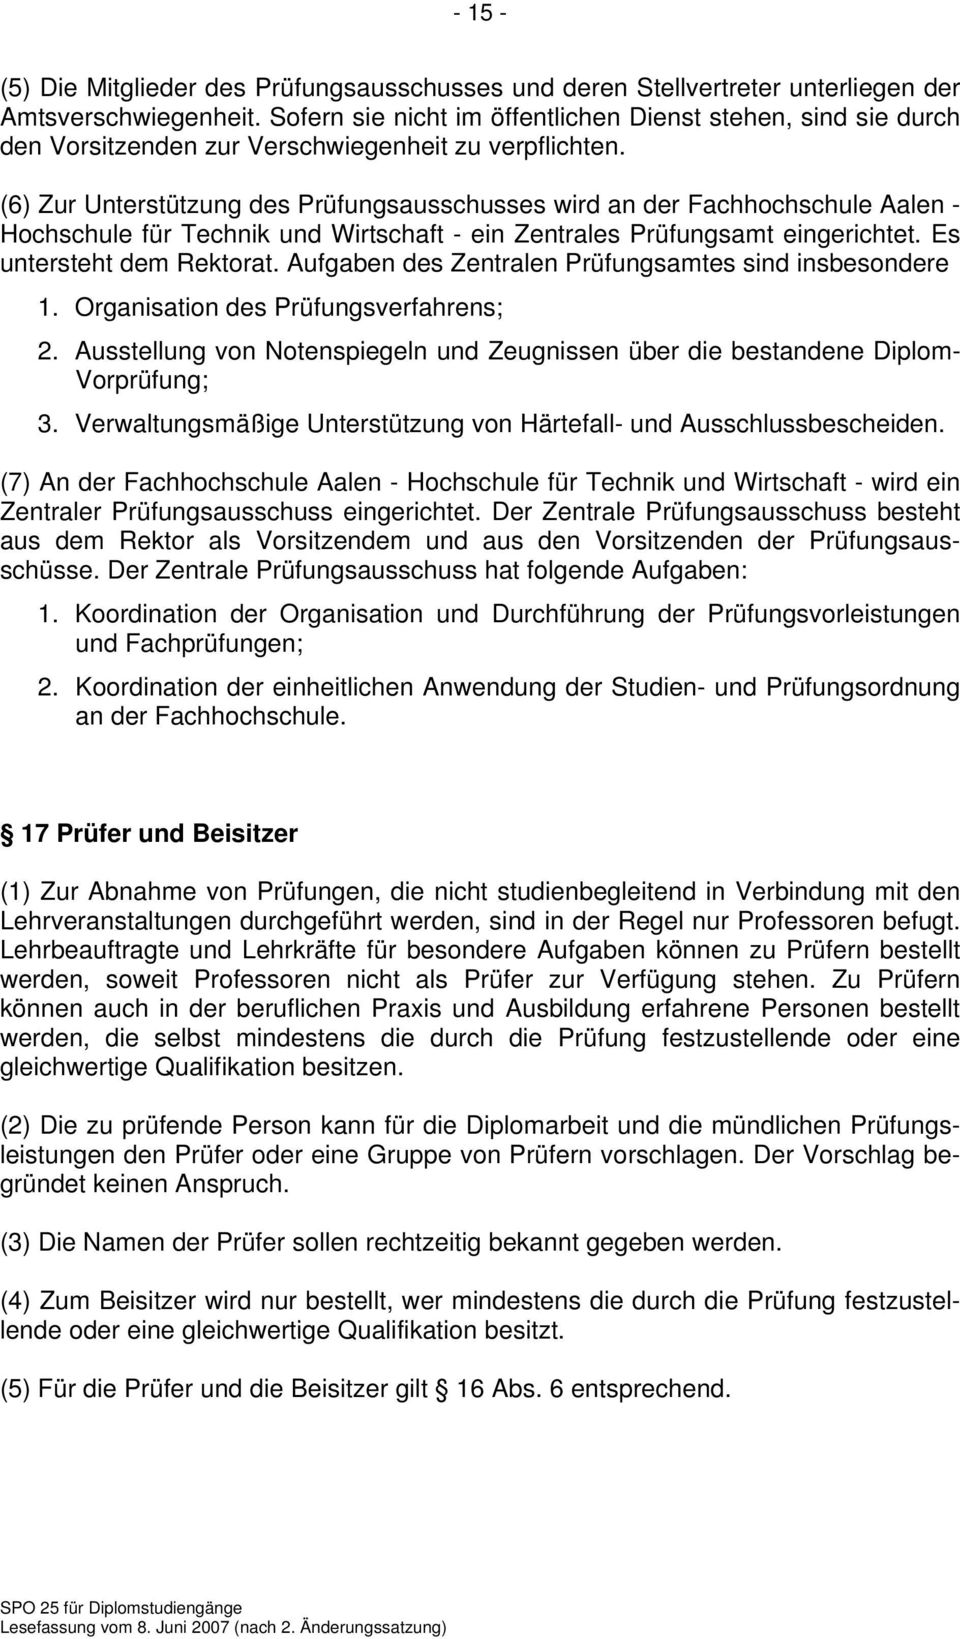 (6) Zur Unterstützung des Prüfungsausschusses wird an der Fachhochschule Aalen - Hochschule für Technik und Wirtschaft - ein Zentrales Prüfungsamt eingerichtet. Es untersteht dem Rektorat.